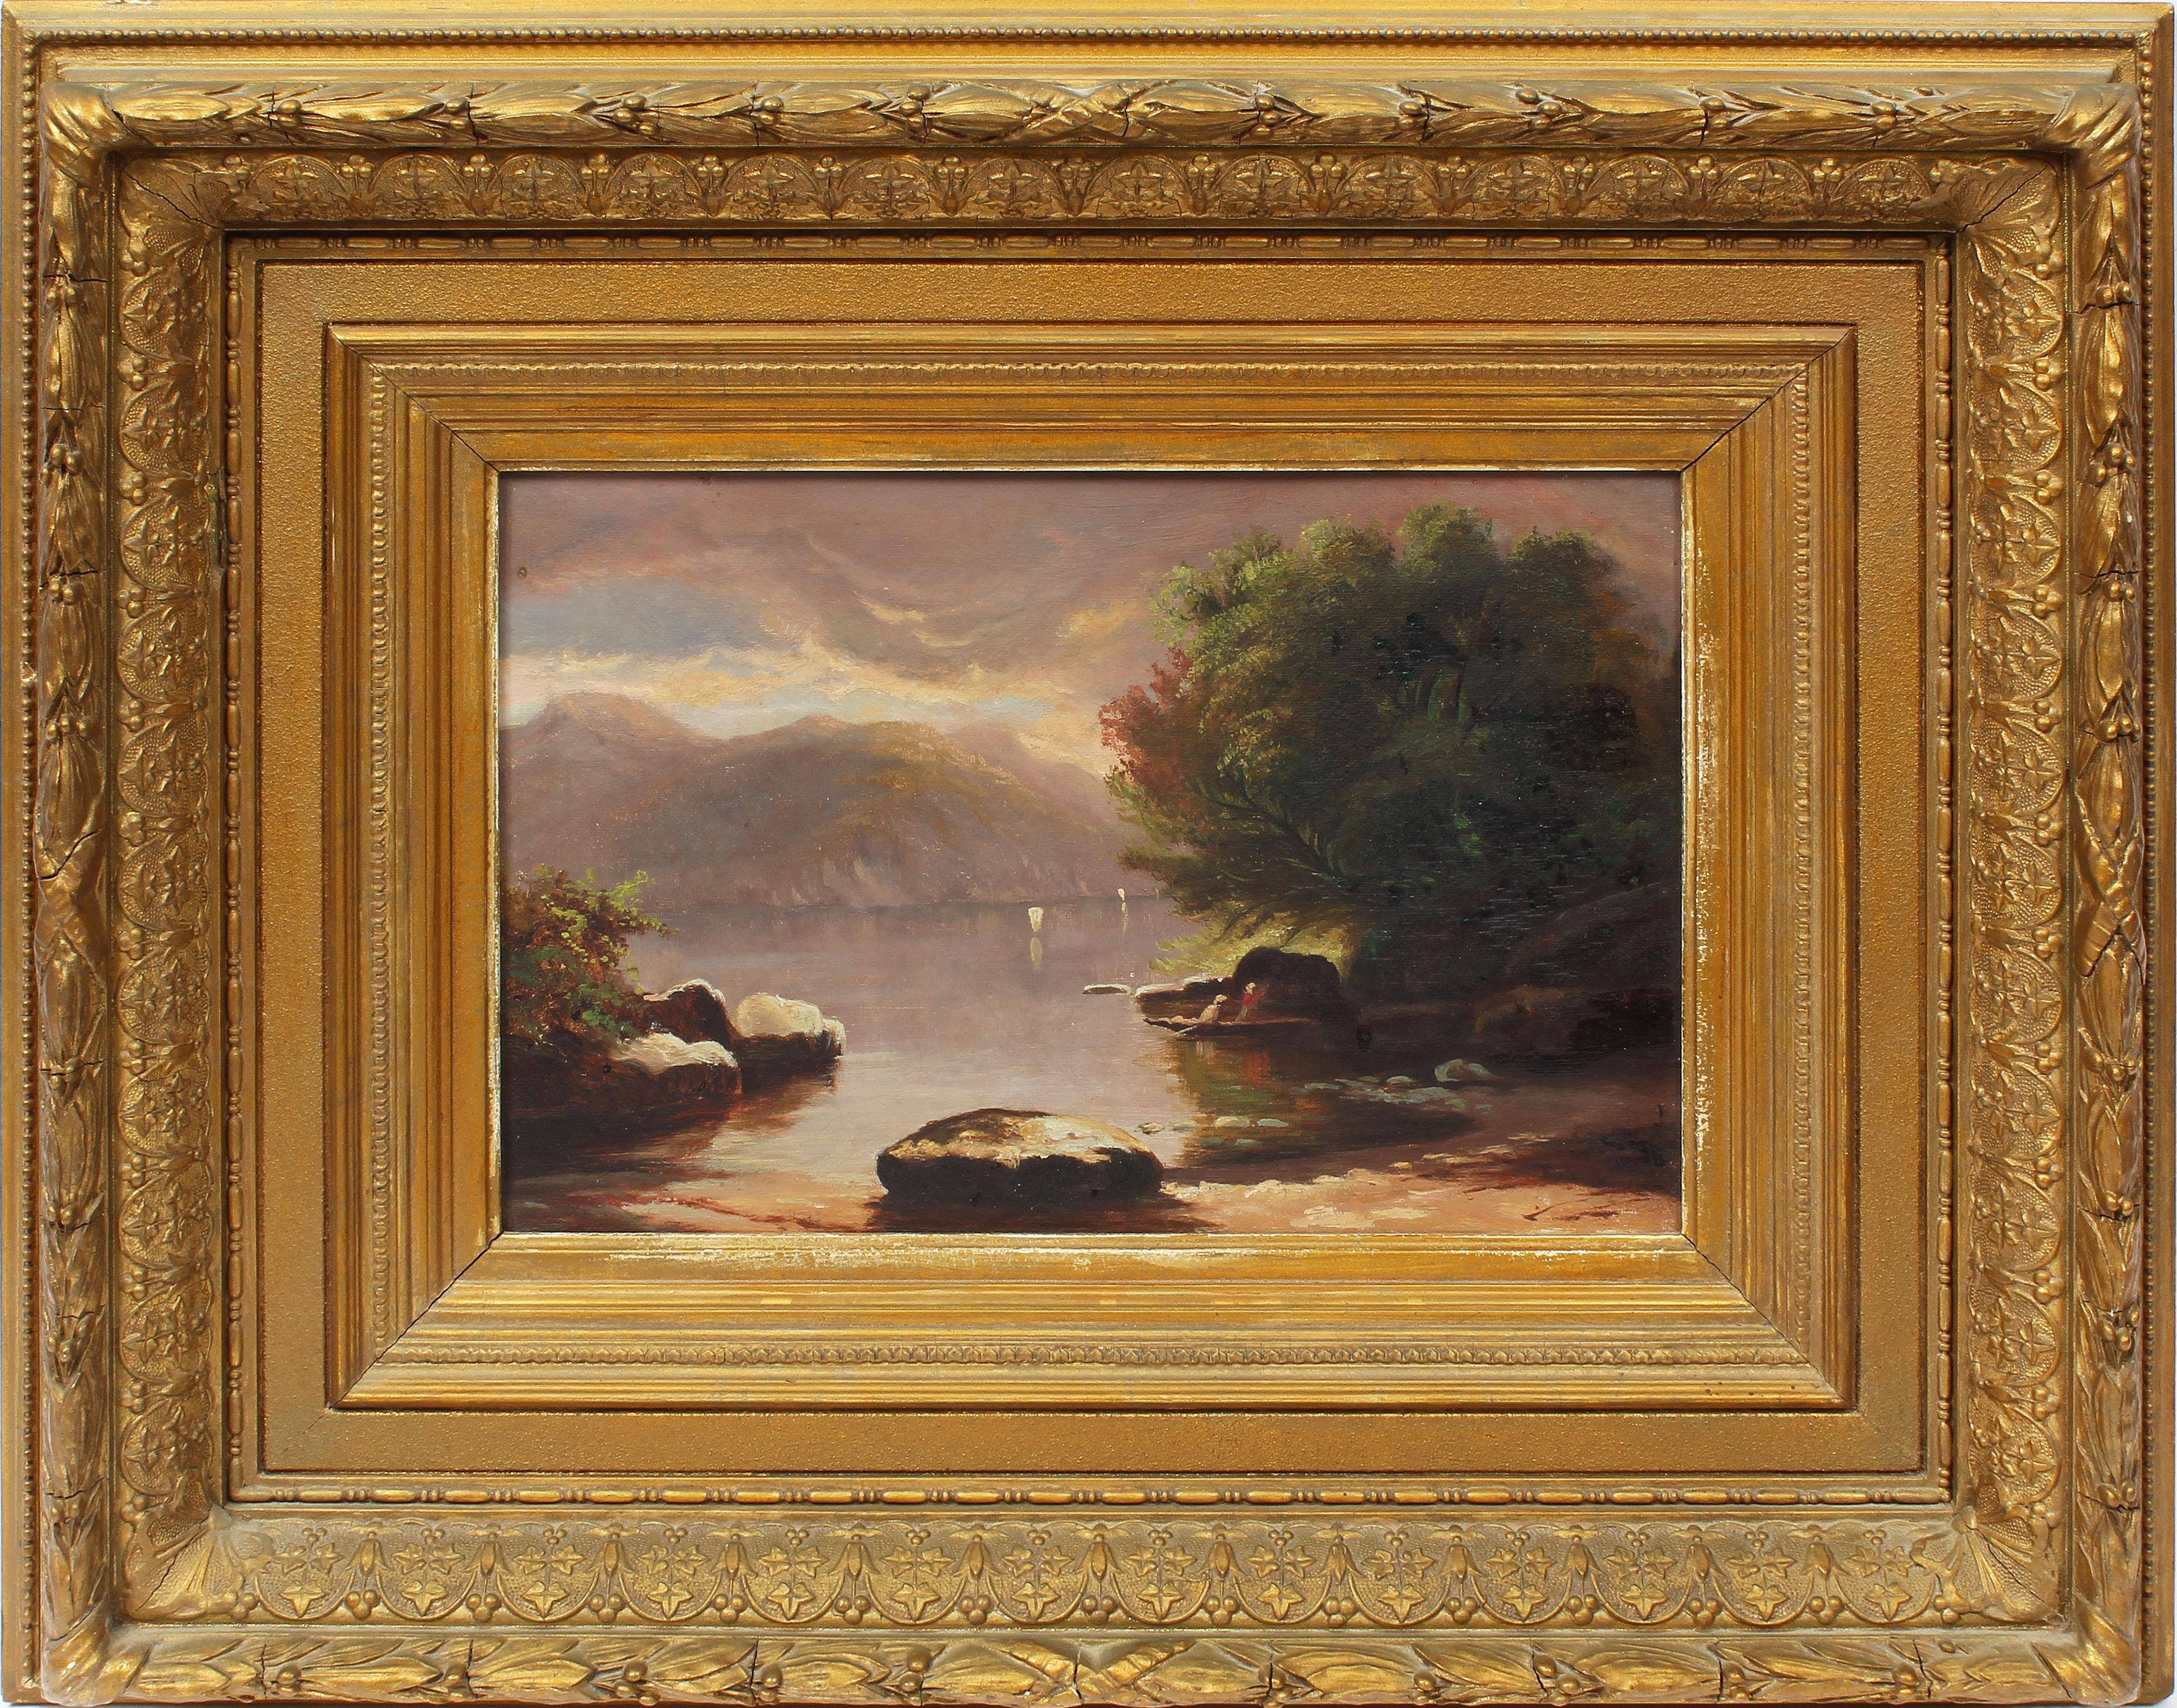 Unknown Landscape Painting - Hudson River School Luminous Sunset Storm Landscape 1870's Original Oil Painting